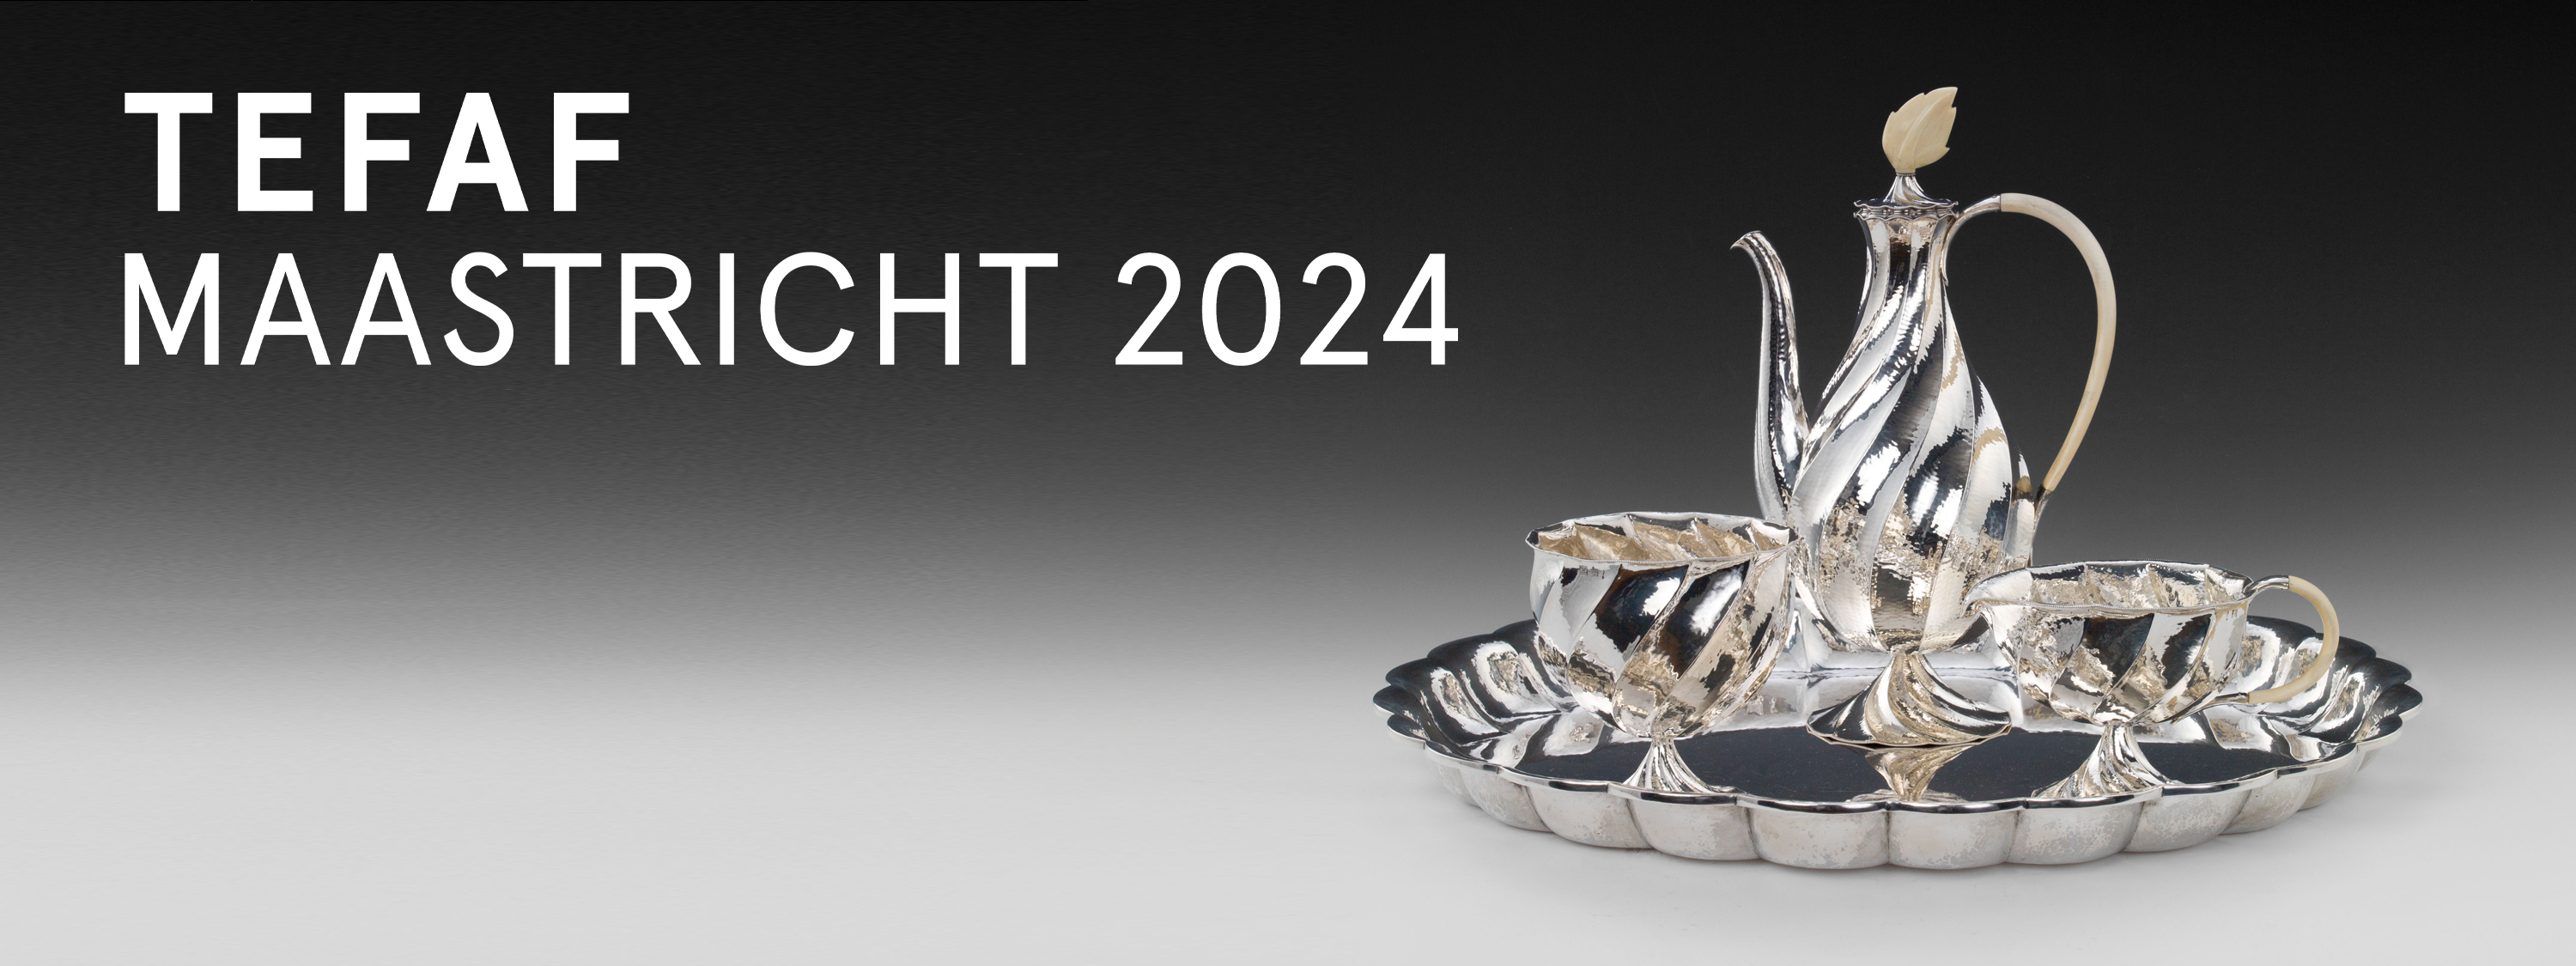 Unser neuer Katalog zur TEFAF Maastricht 2024